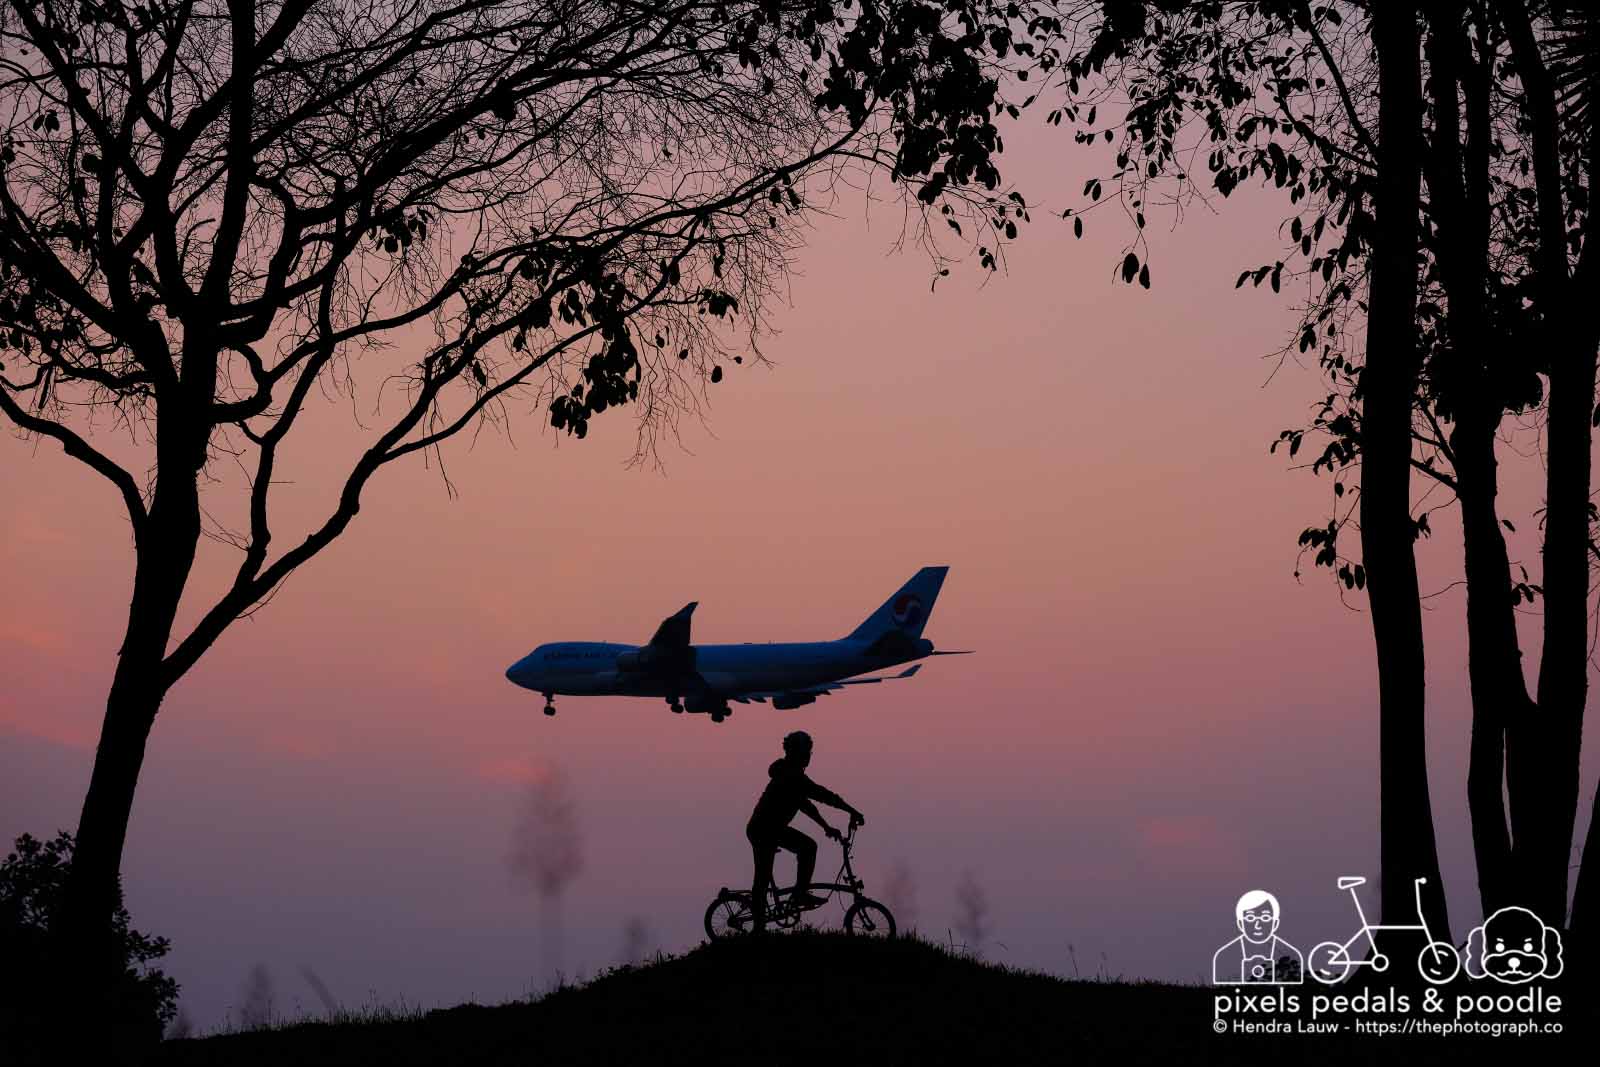 Plane Spotting Korean Air Cargo Boeing 747 HL7602 arriving from Seoul during sunrise